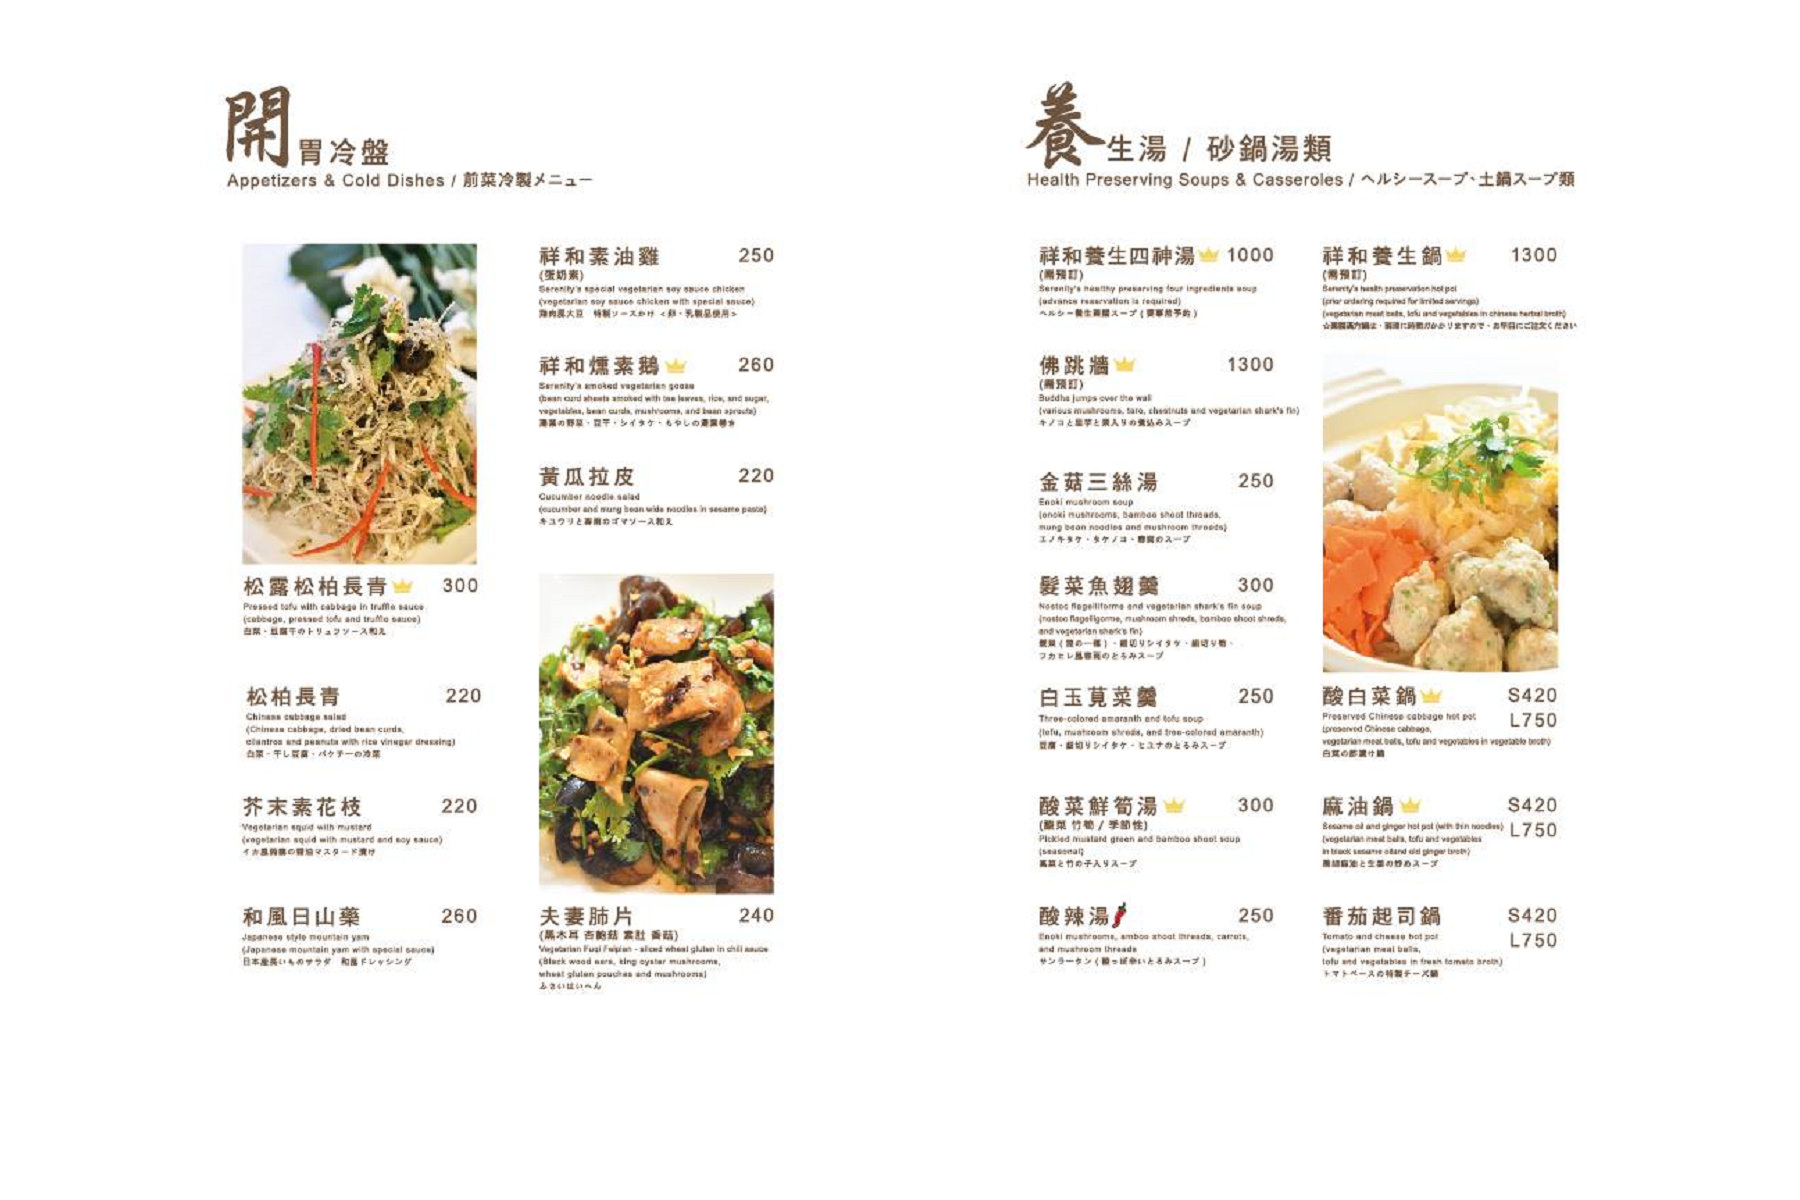 祥和蔬食精緻料理,祥和素食,台北餐廳,台北素食,台北素食推薦,米其林推薦,米其林餐廳推薦,米其林素食,素食推薦